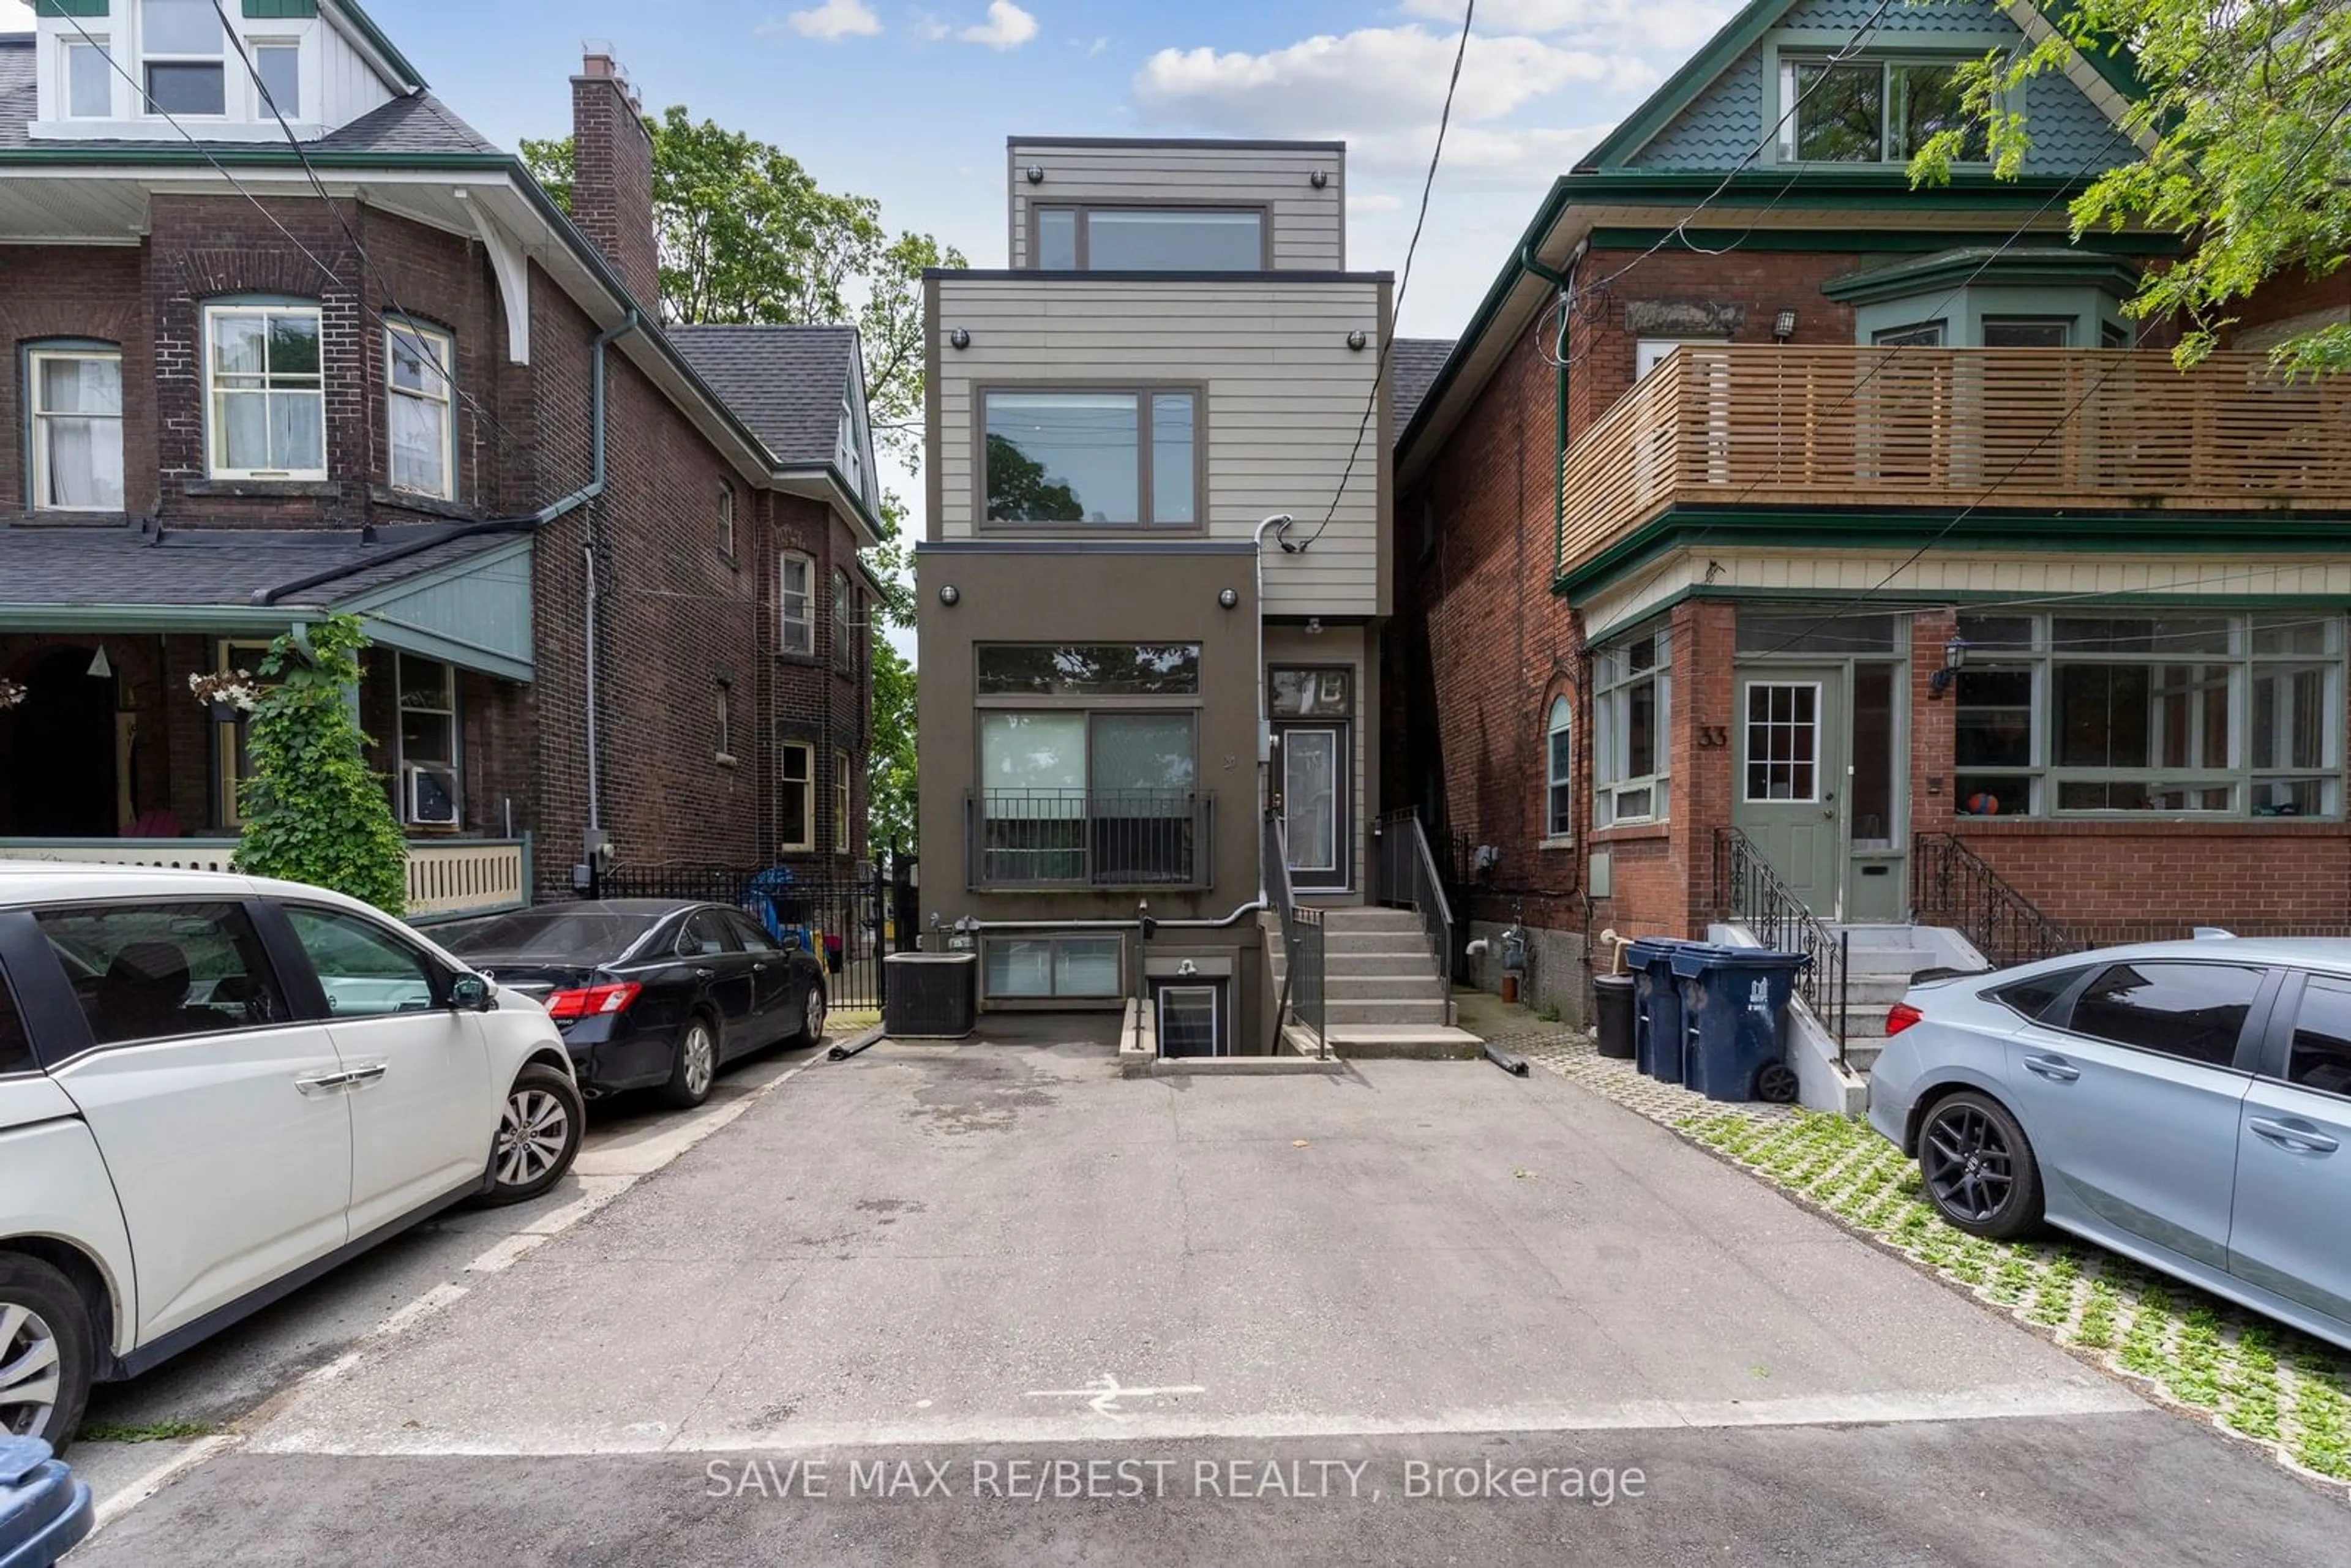 Street view for 31 Springhurst Ave, Toronto Ontario M6K 1B1